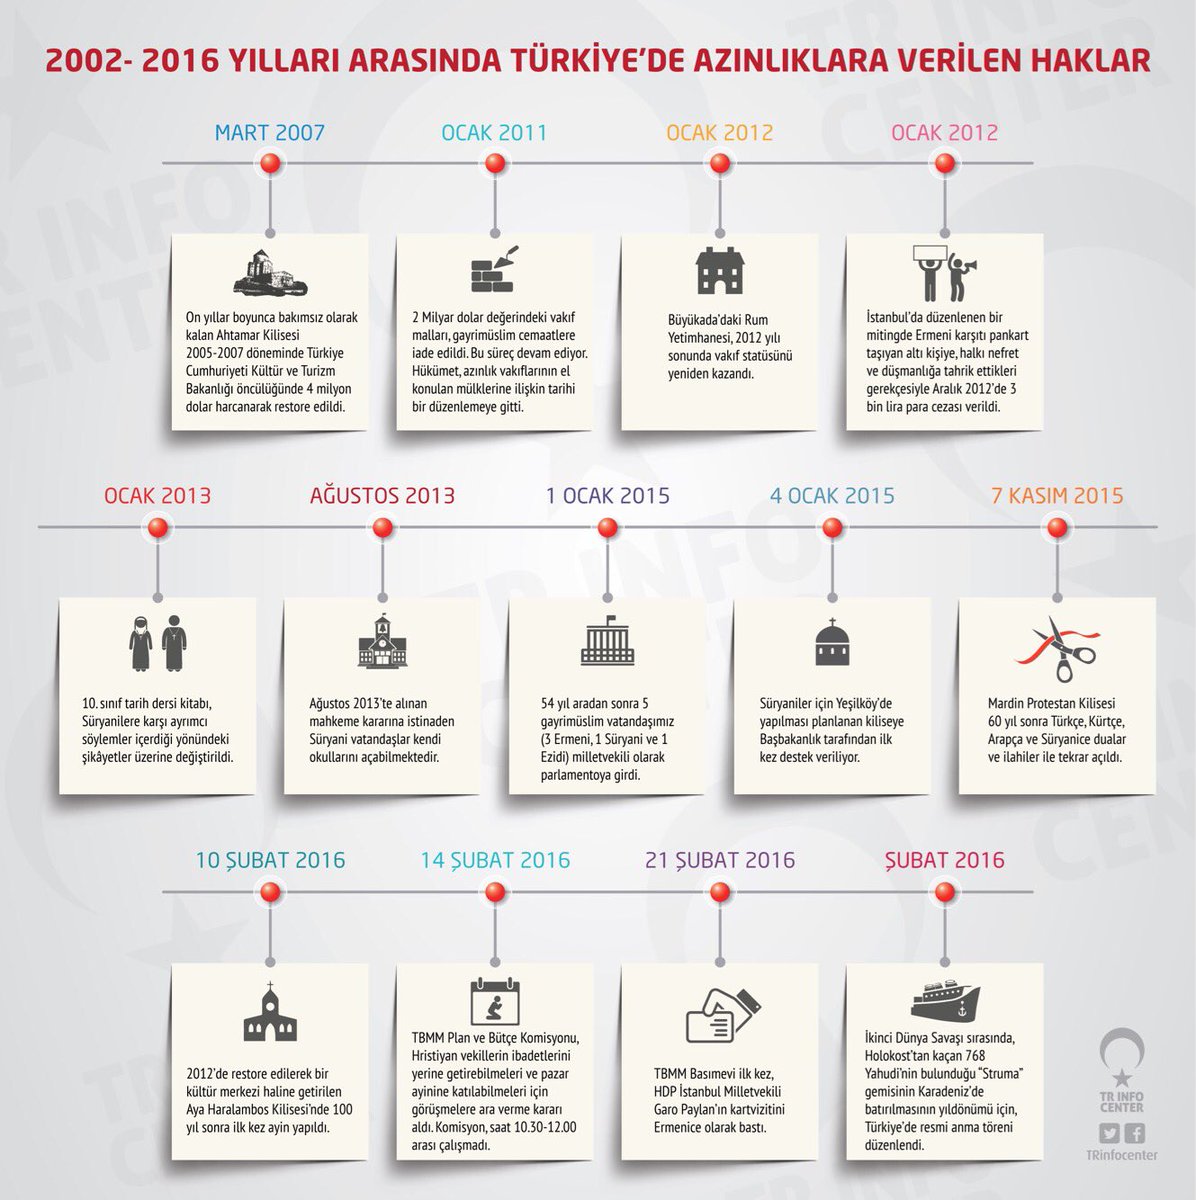 2002-2016 Yılları Arasında Türkiye'de Azınlıklara Verilen Haklar